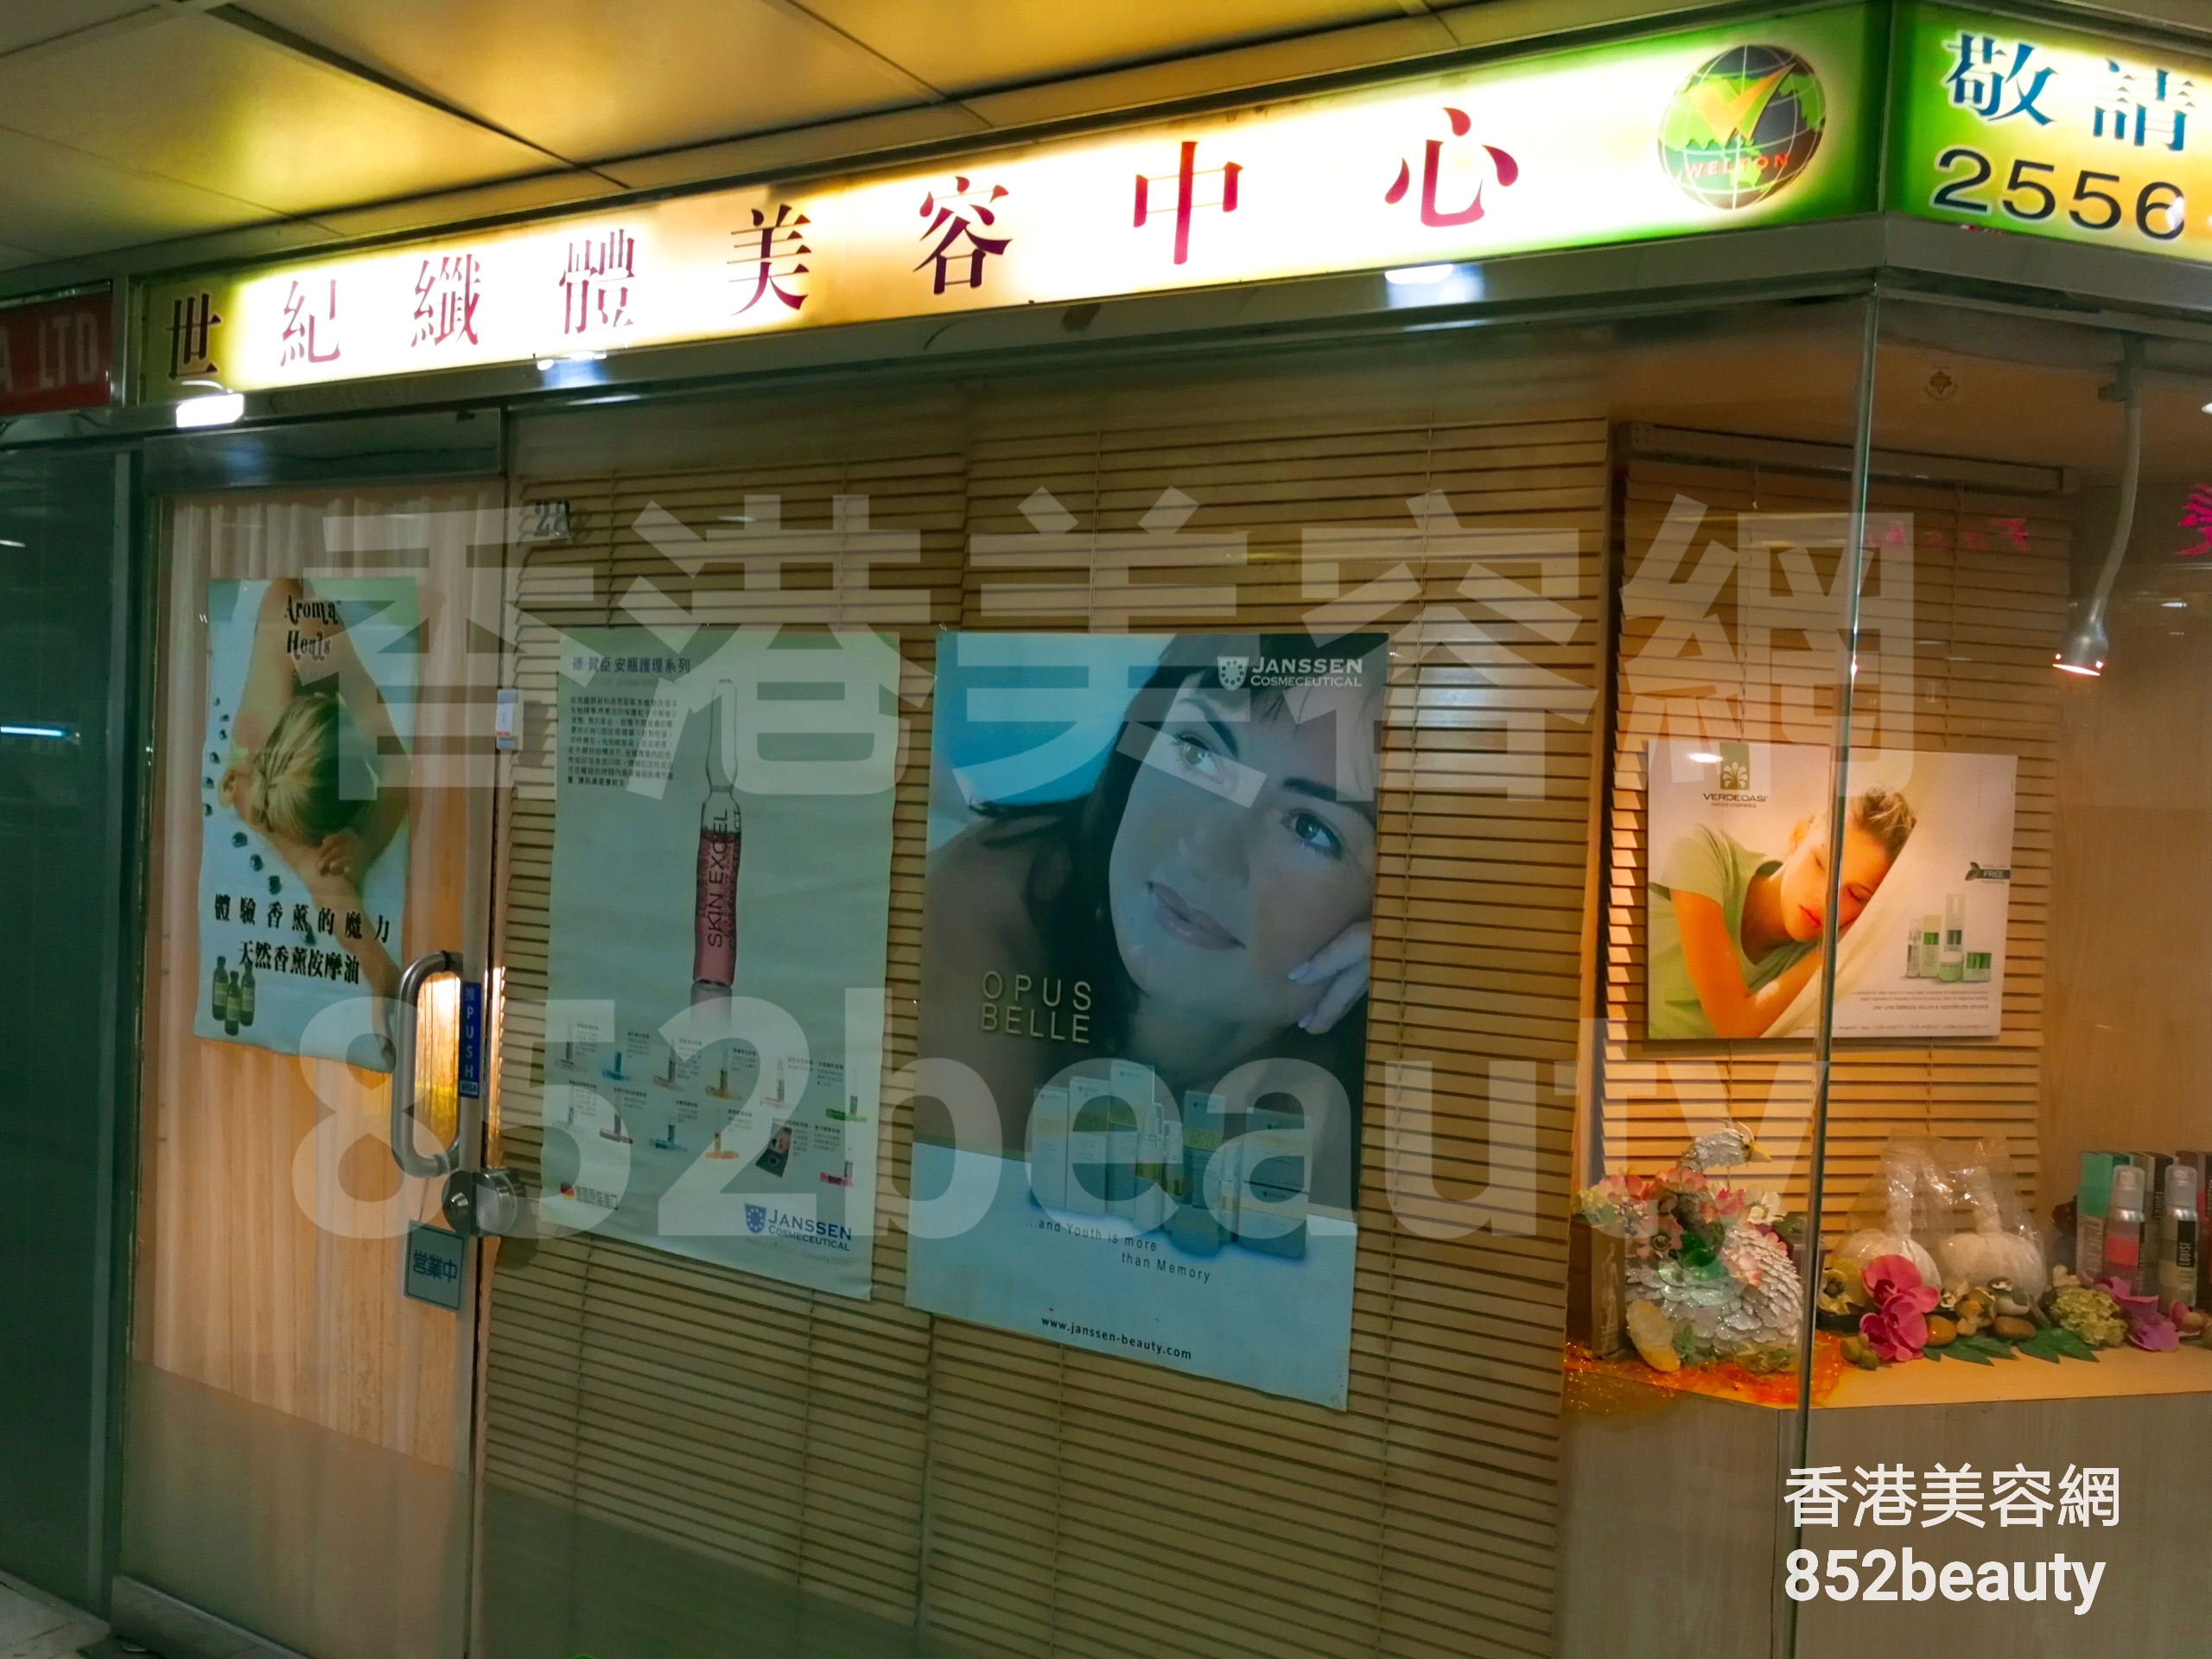 香港美容網 Hong Kong Beauty Salon 美容院 / 美容師: 世紀纖體美容中心